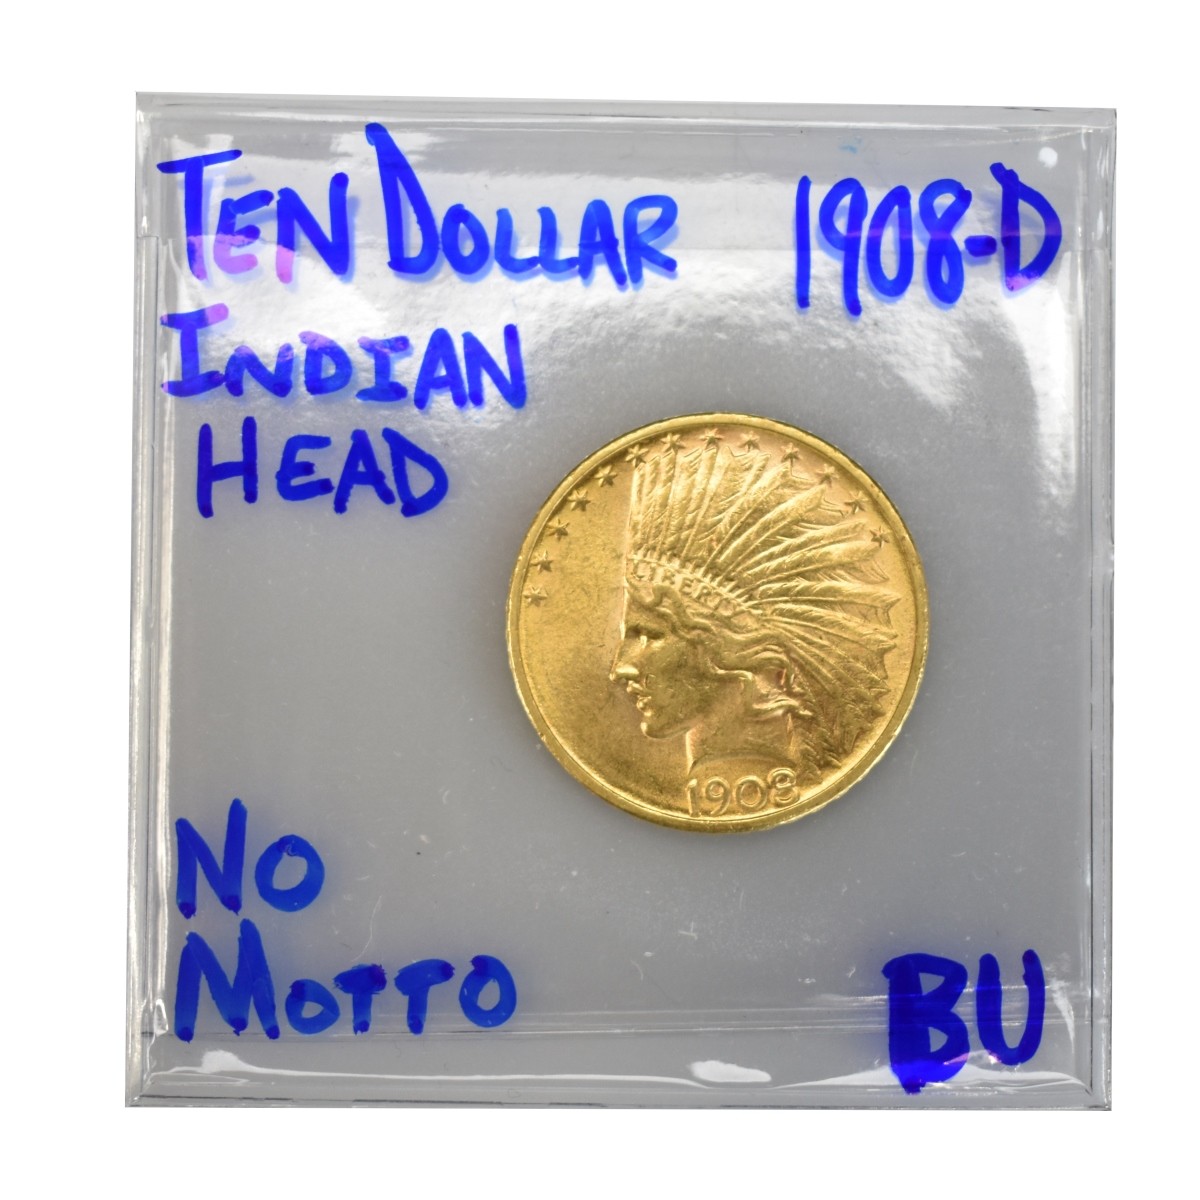 1908 US Indian Head Ten Dollar